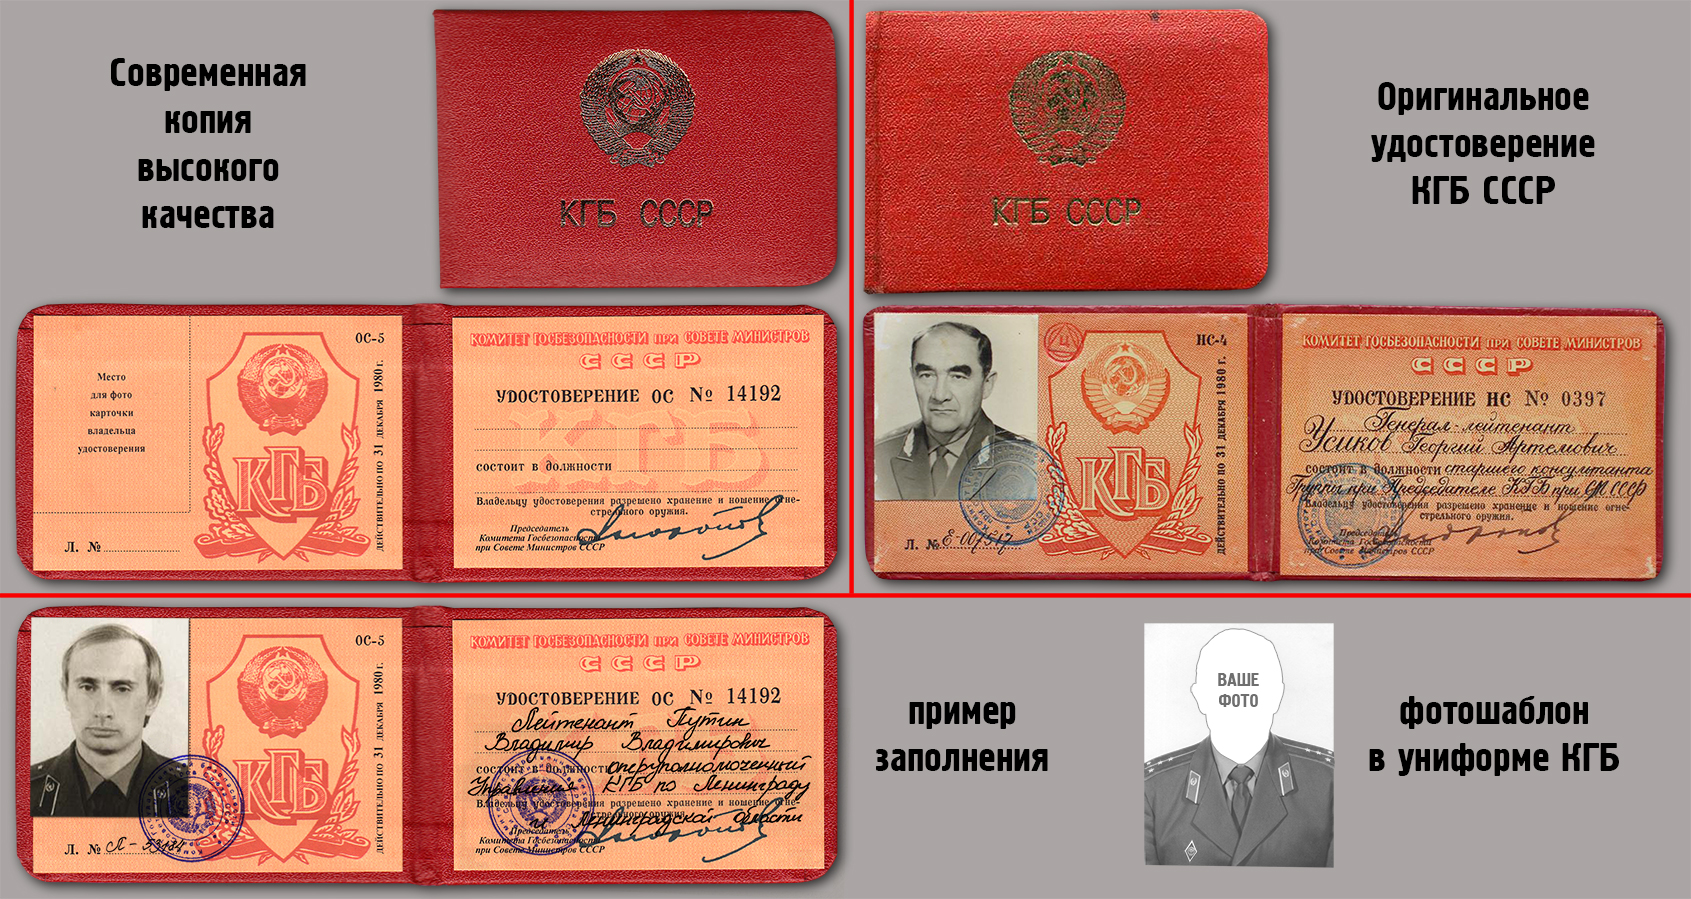 Удостоверение КГБ СССР Андропова